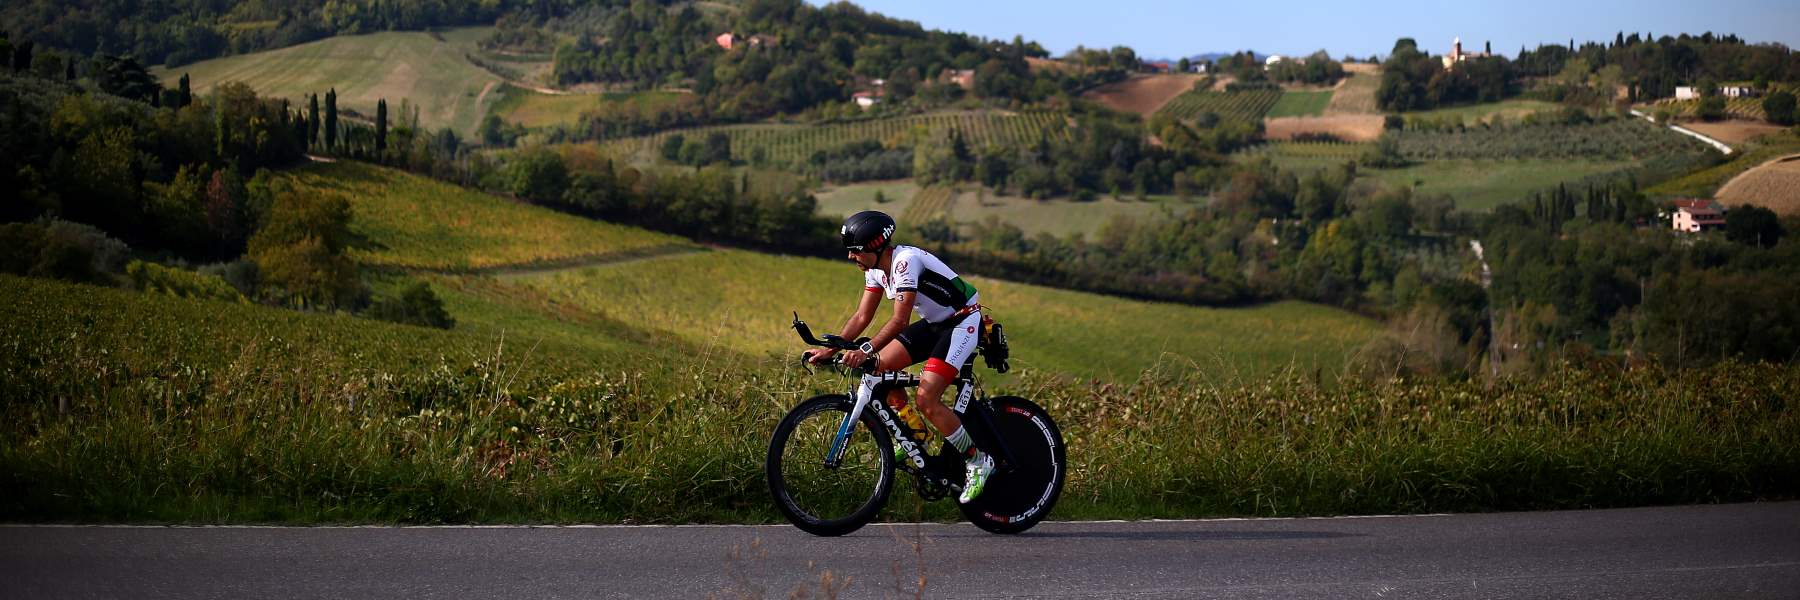 Terre del Triathlon, in bici nei percorsi dell'Ironman Italy Emilia Romagna